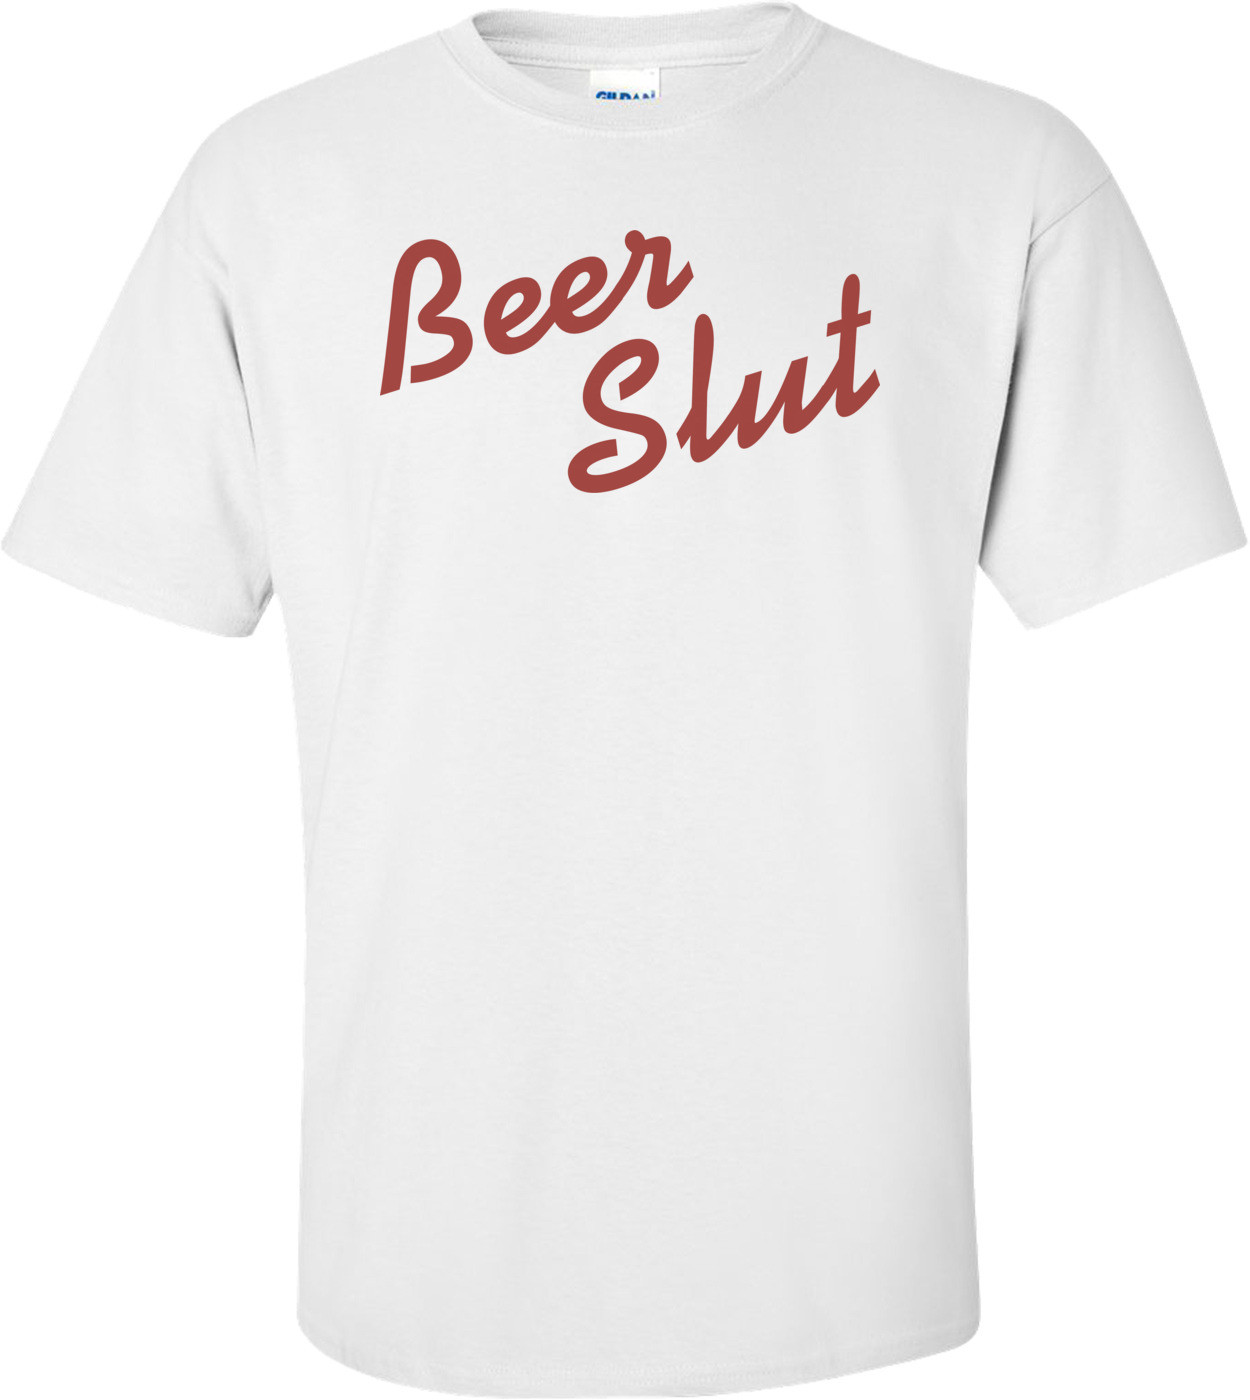 Beer Slut